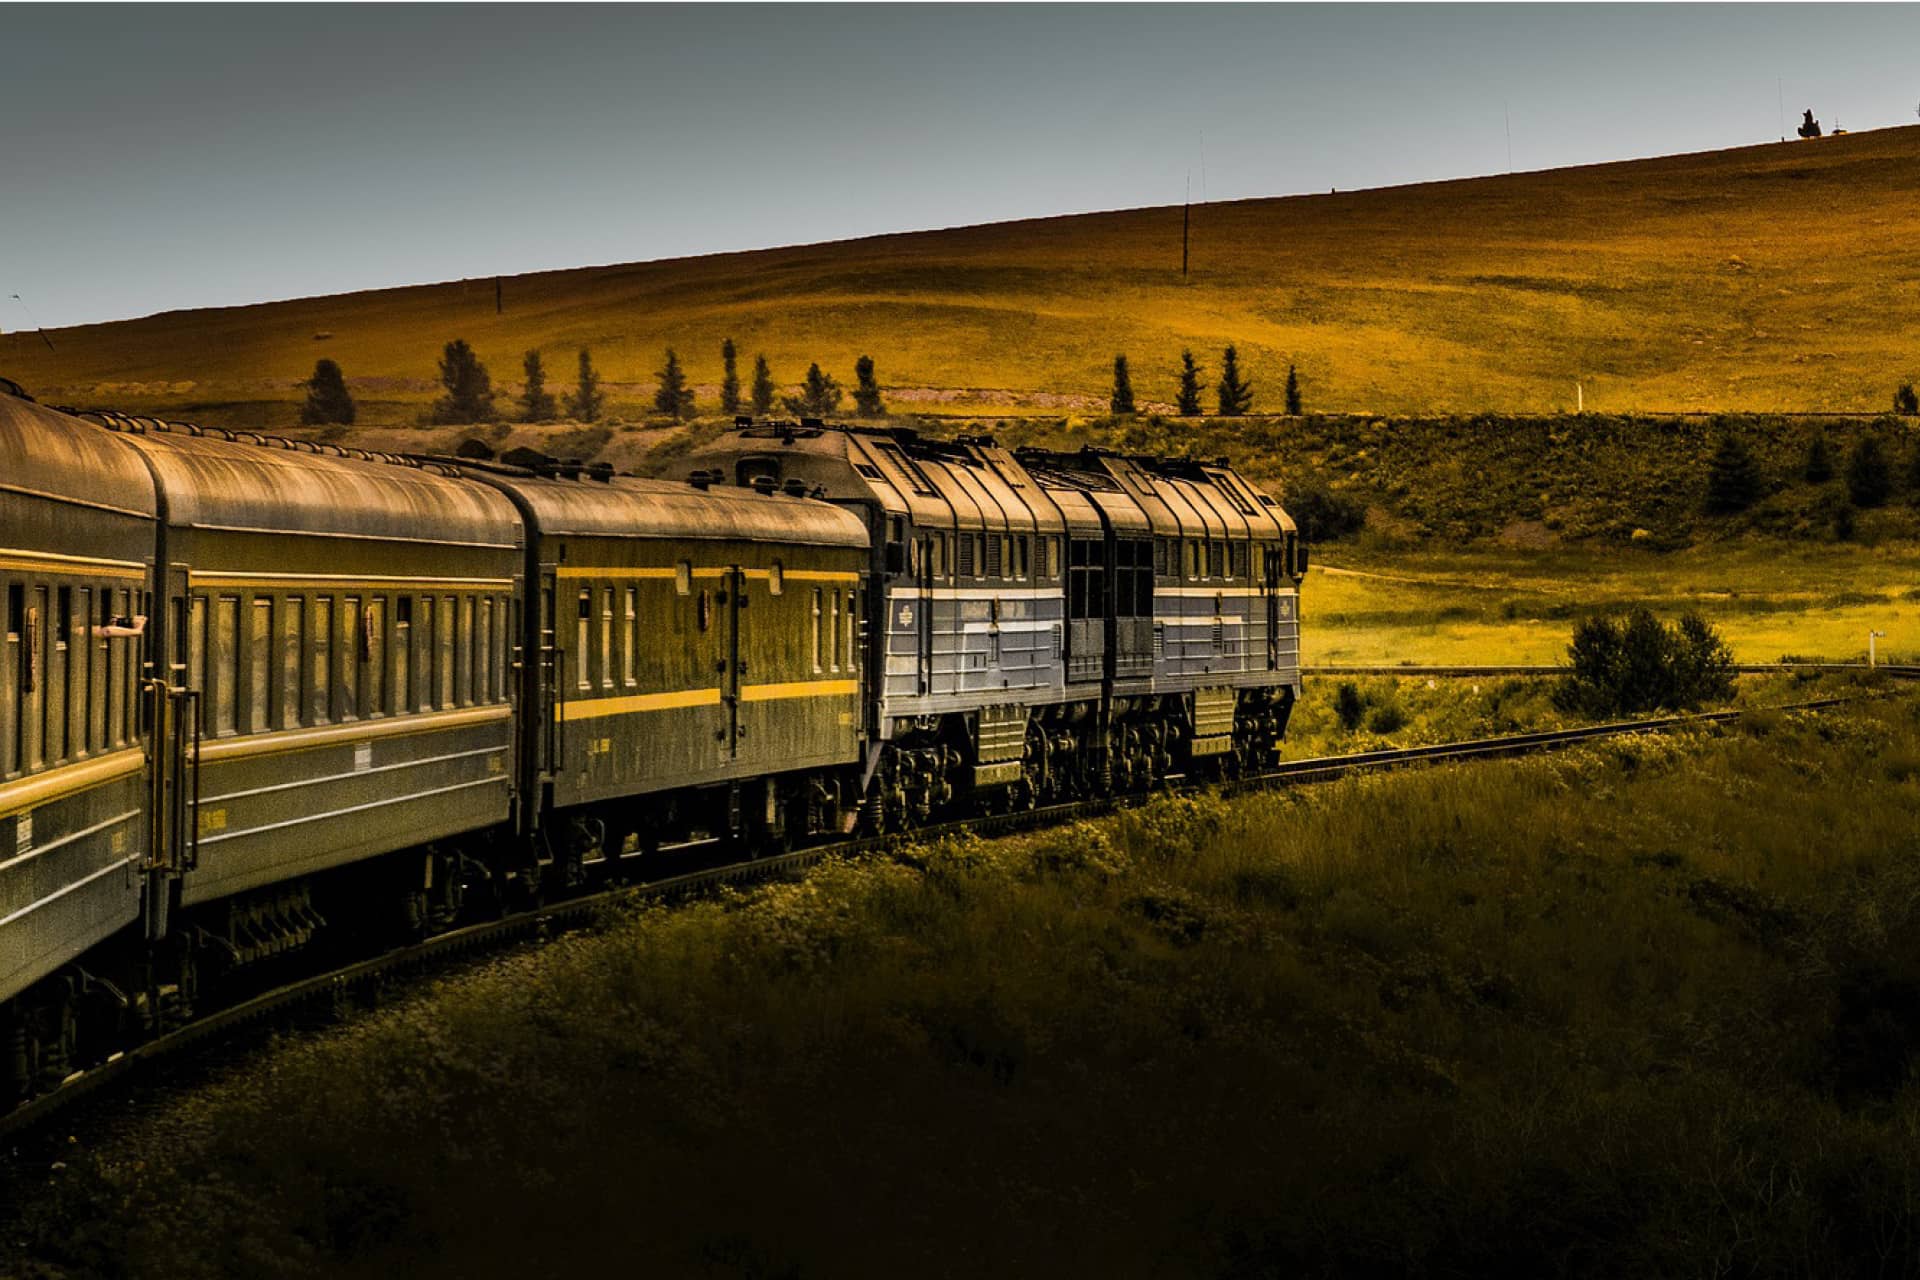 A train on the way in beautiful landscape, green fields